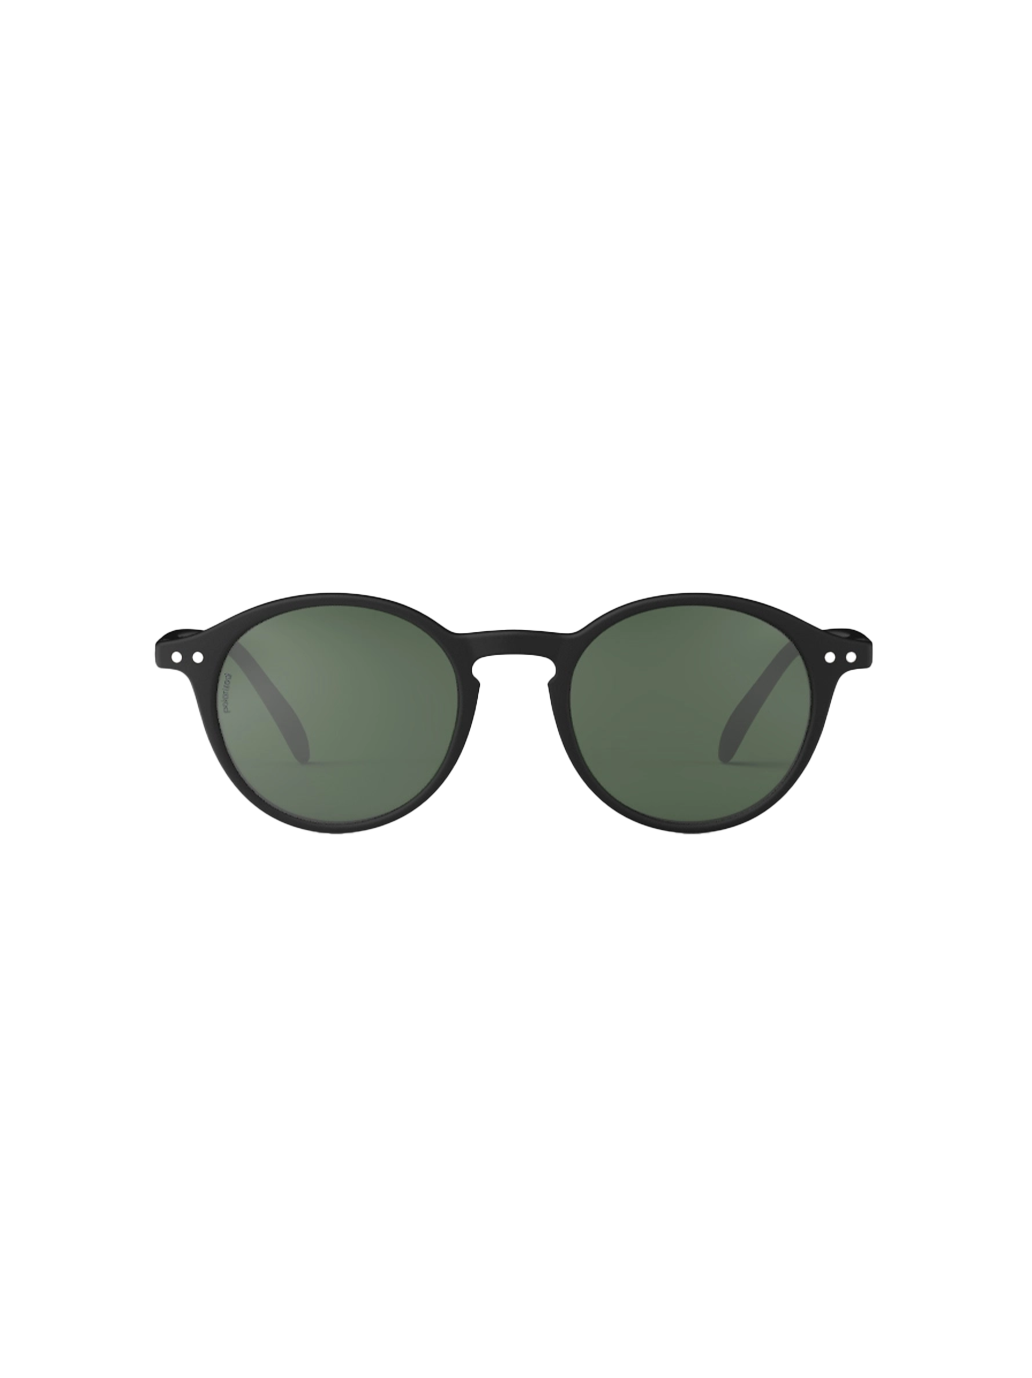 Polarisierte Sonnenbrille für Erwachsene #D